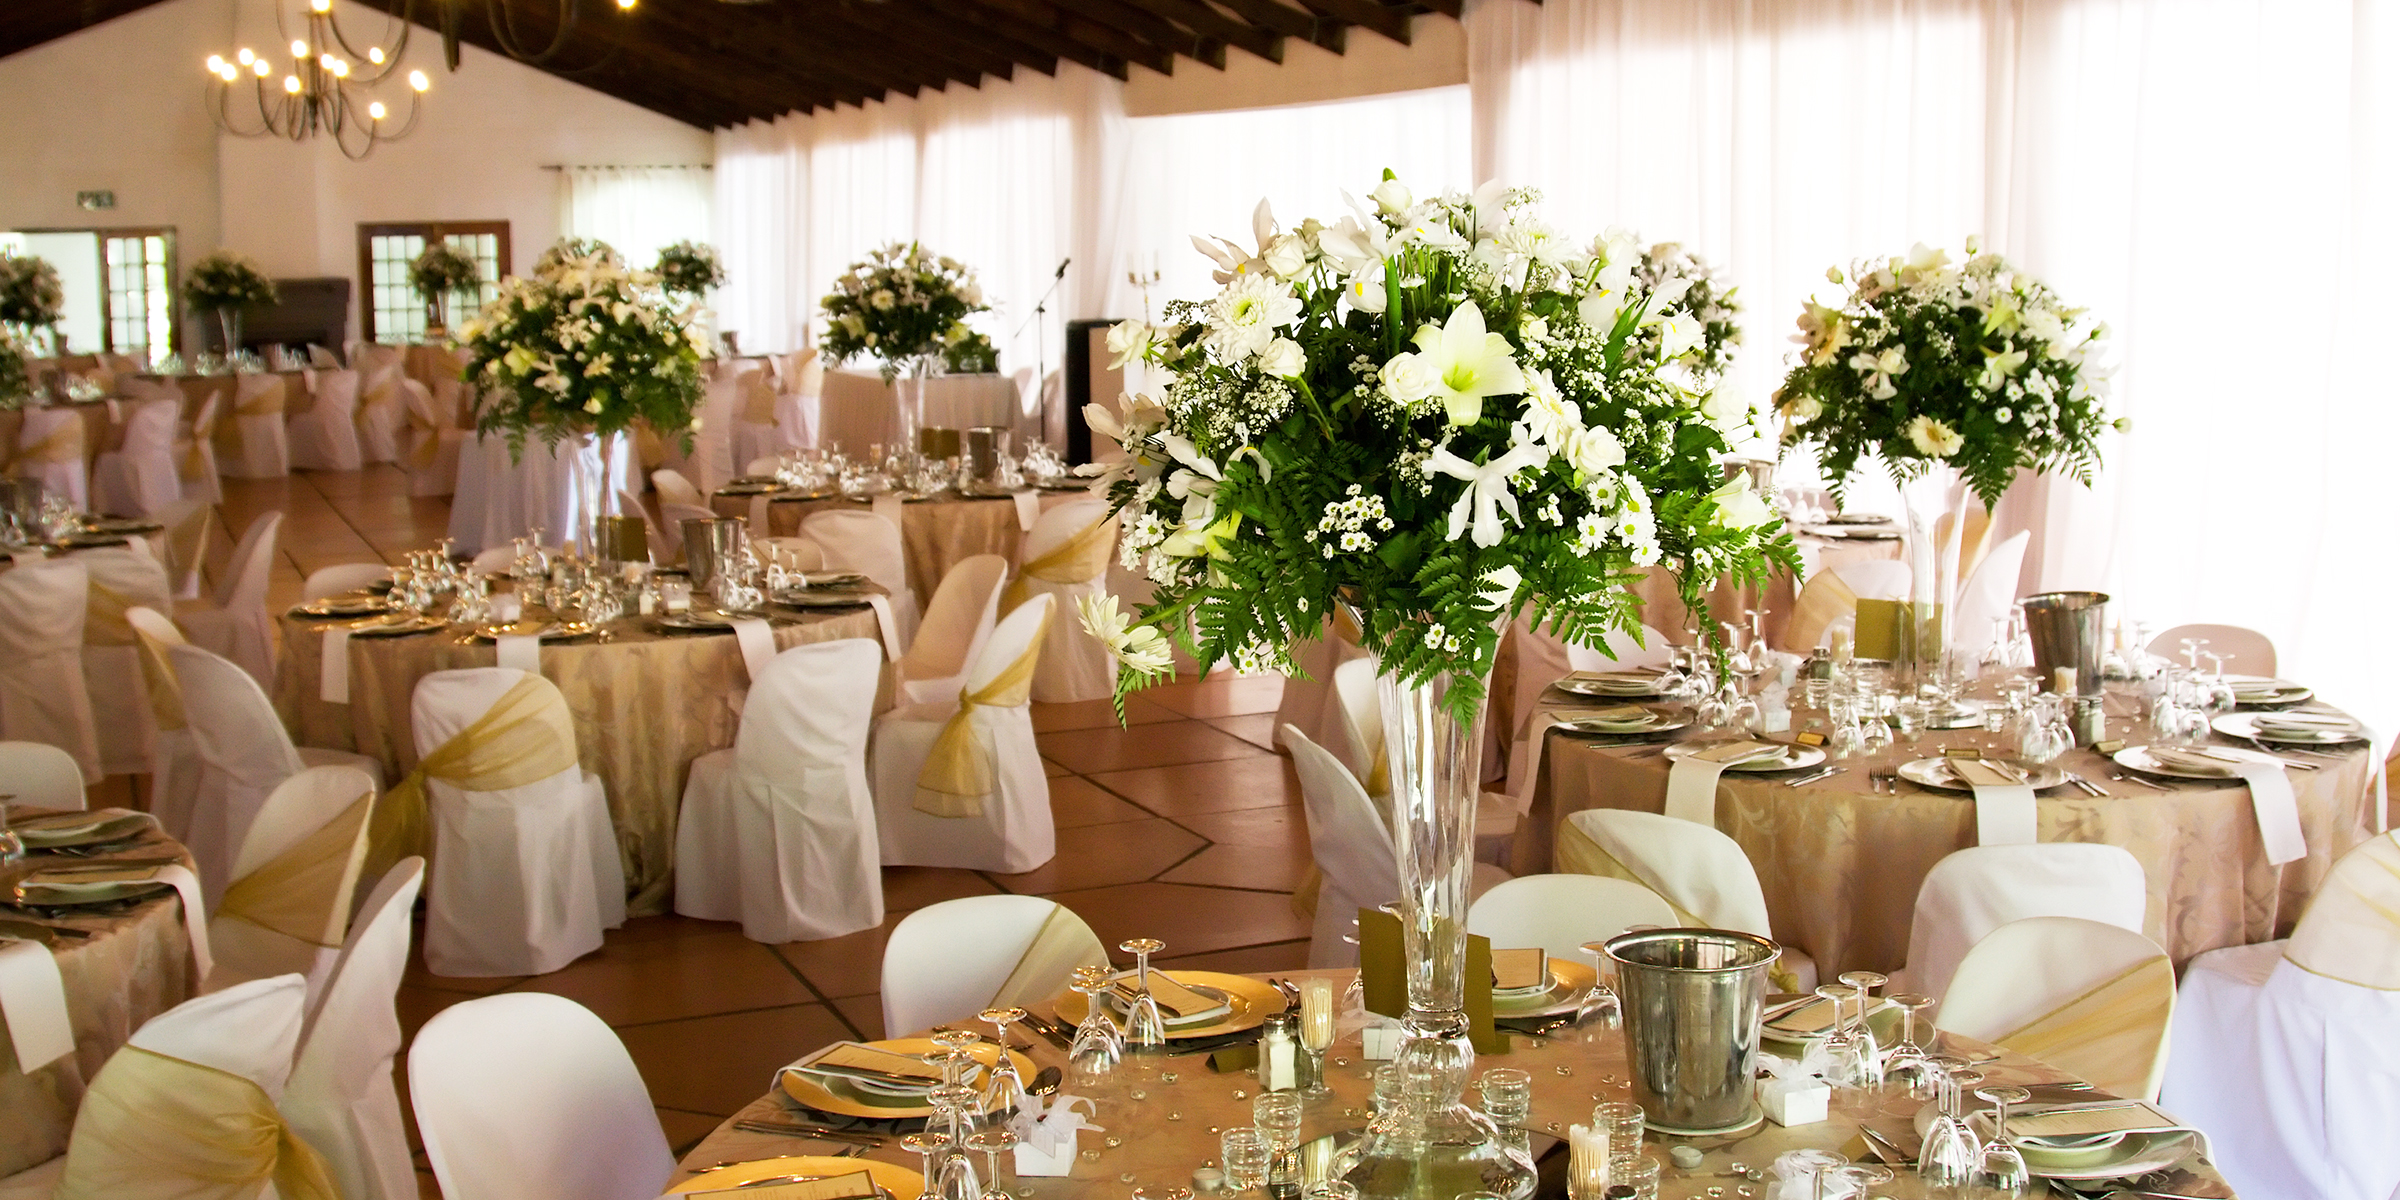 Indoor wedding venue | Source: Shutterstock